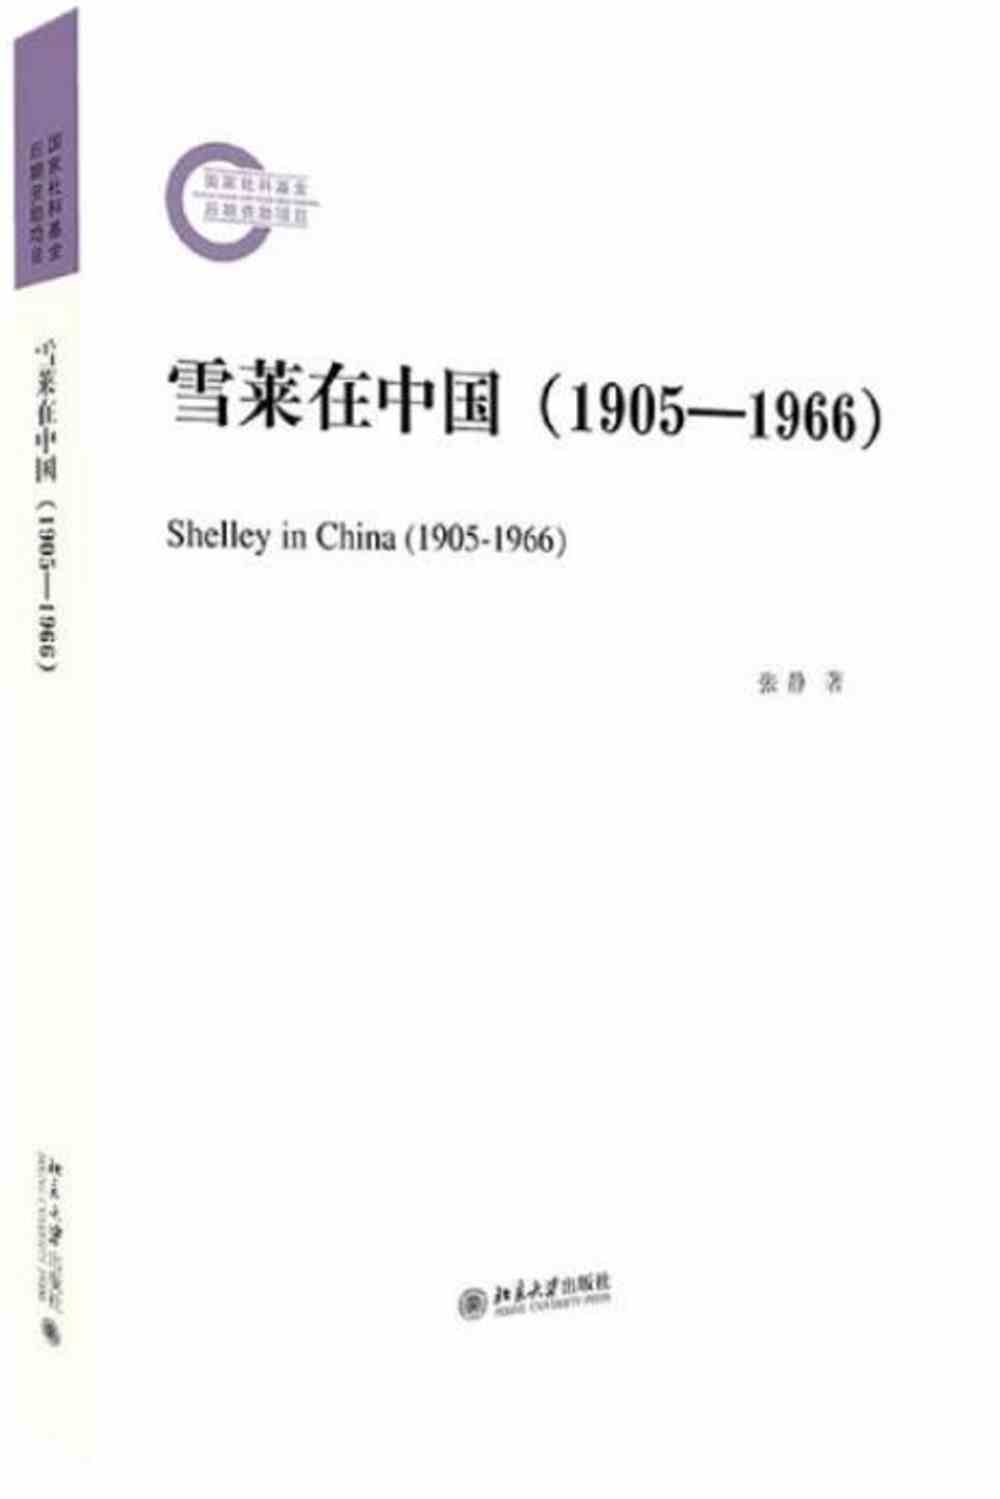 雪萊在中國（1905-1966）